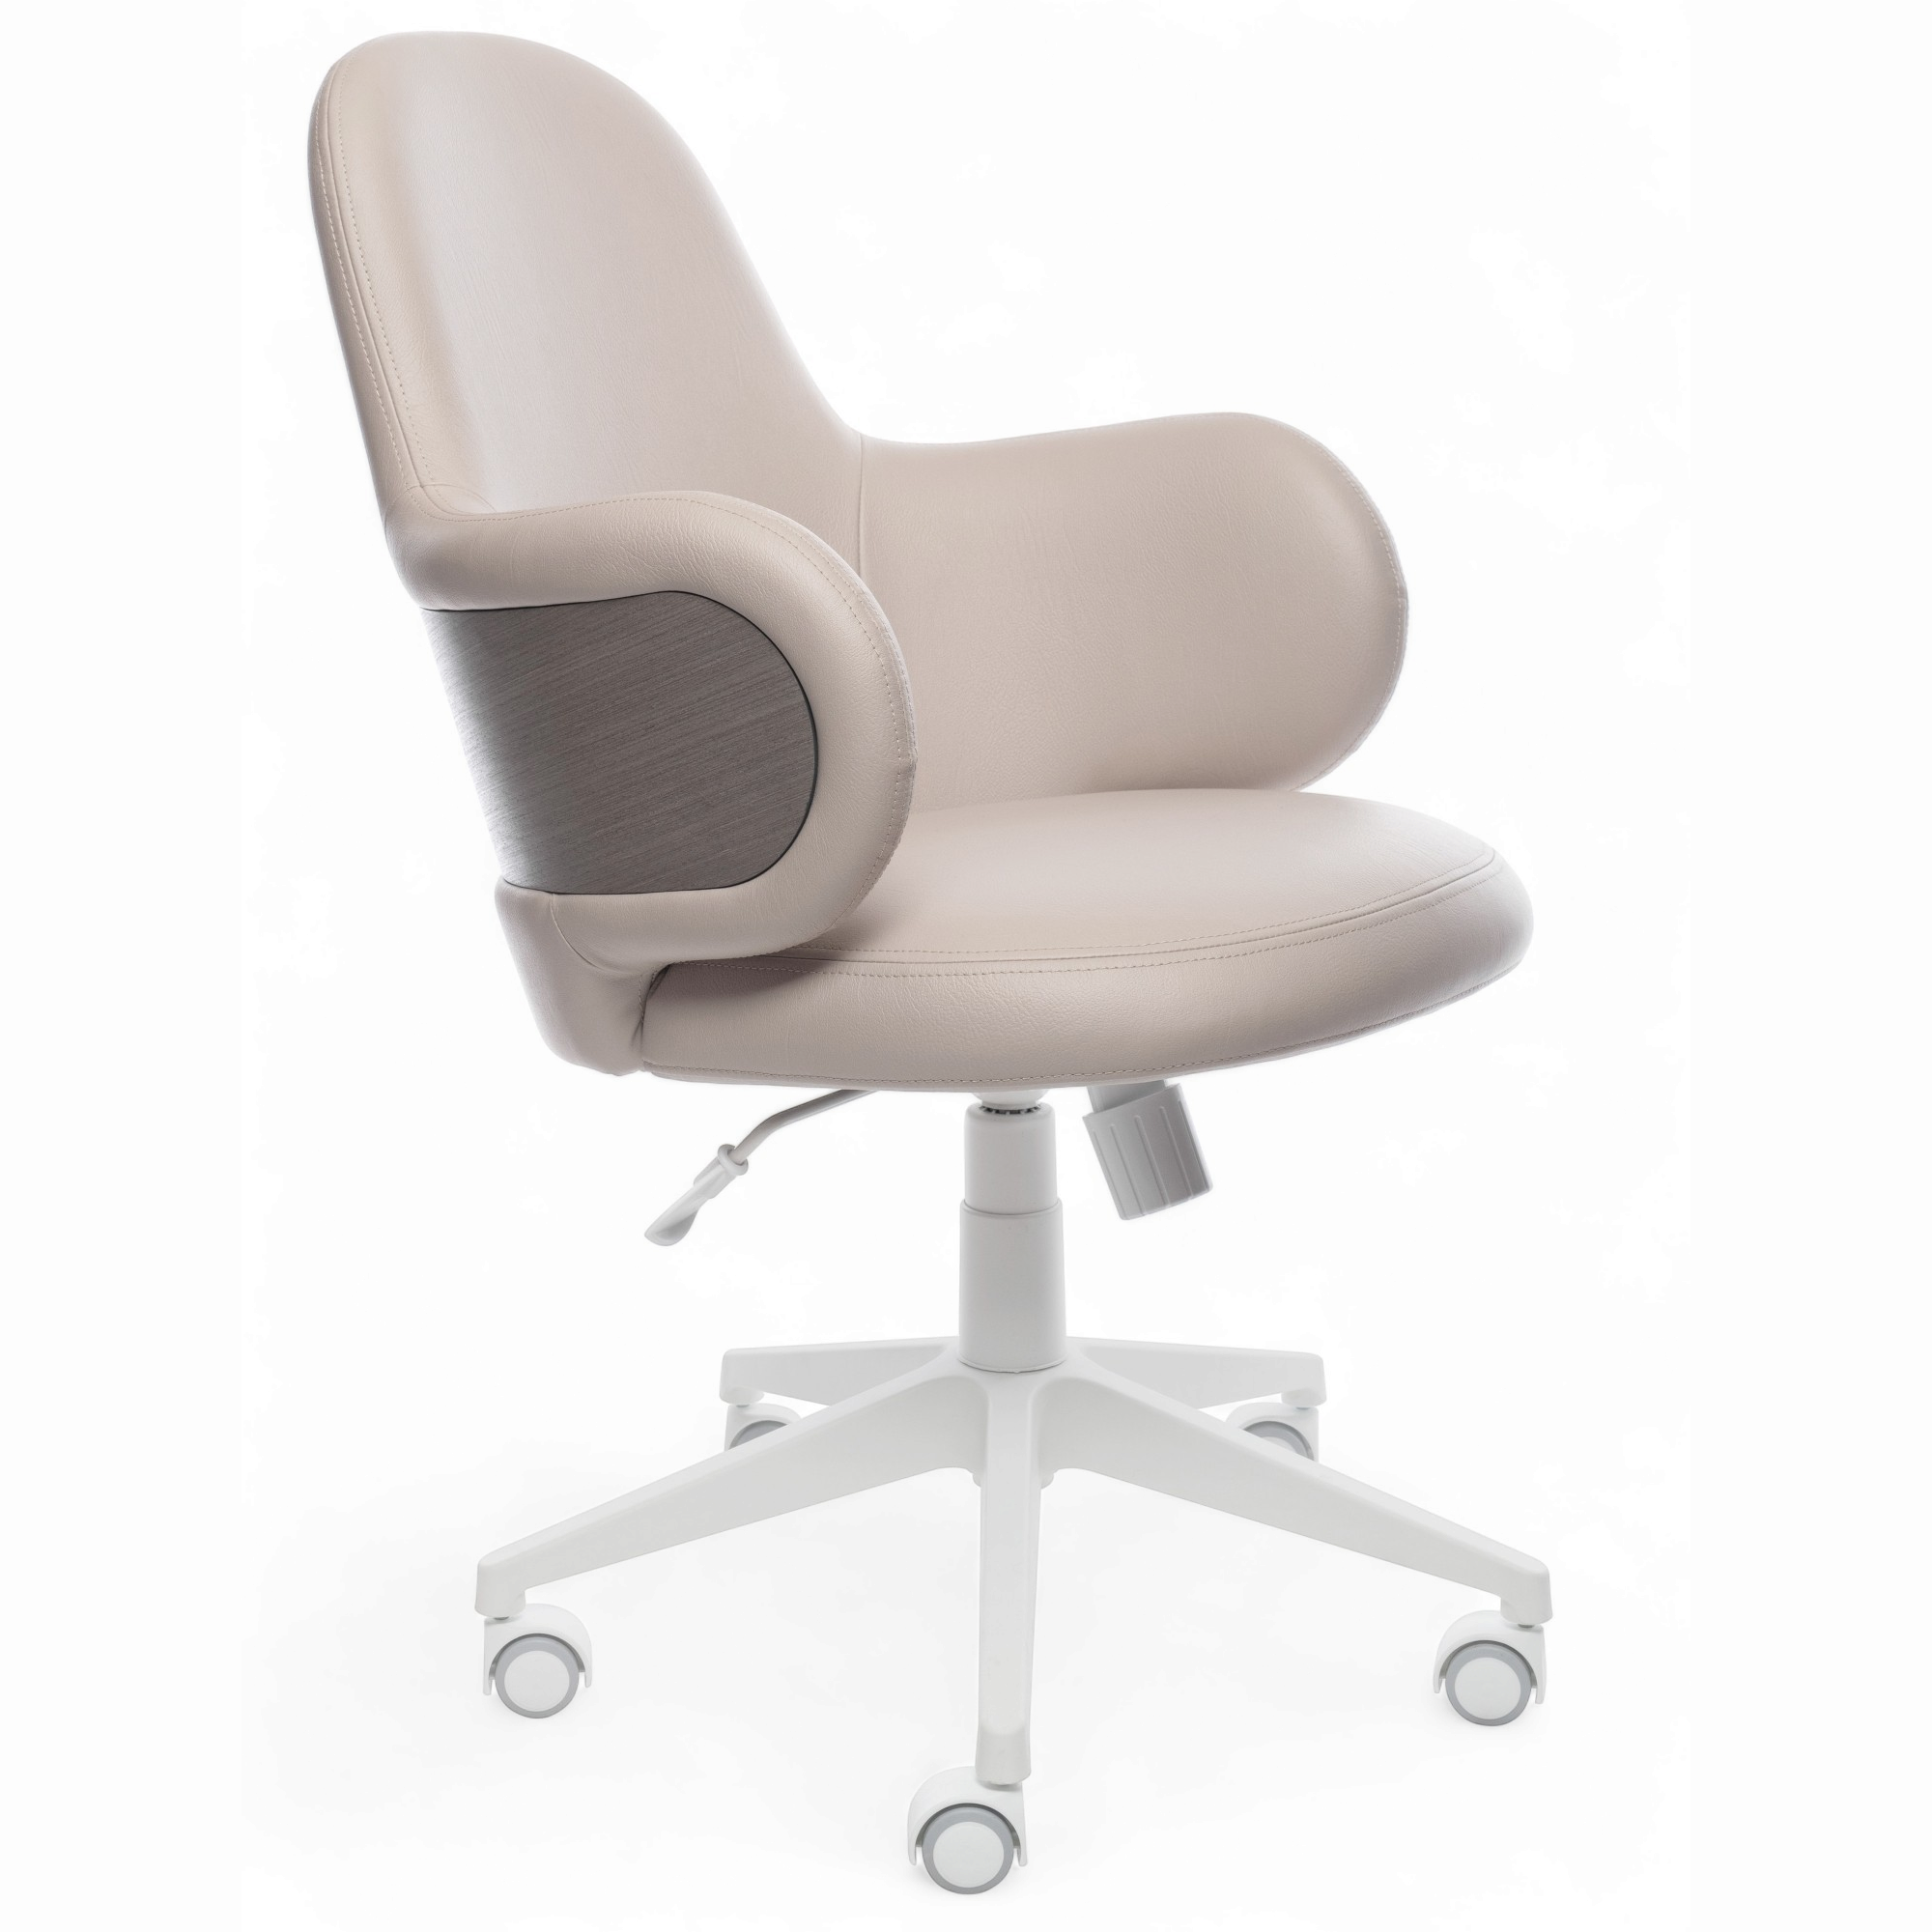 Офисное кресло / Компьютерное кресло Elan бежево-серый, экокожа, крестовина, раскачивание